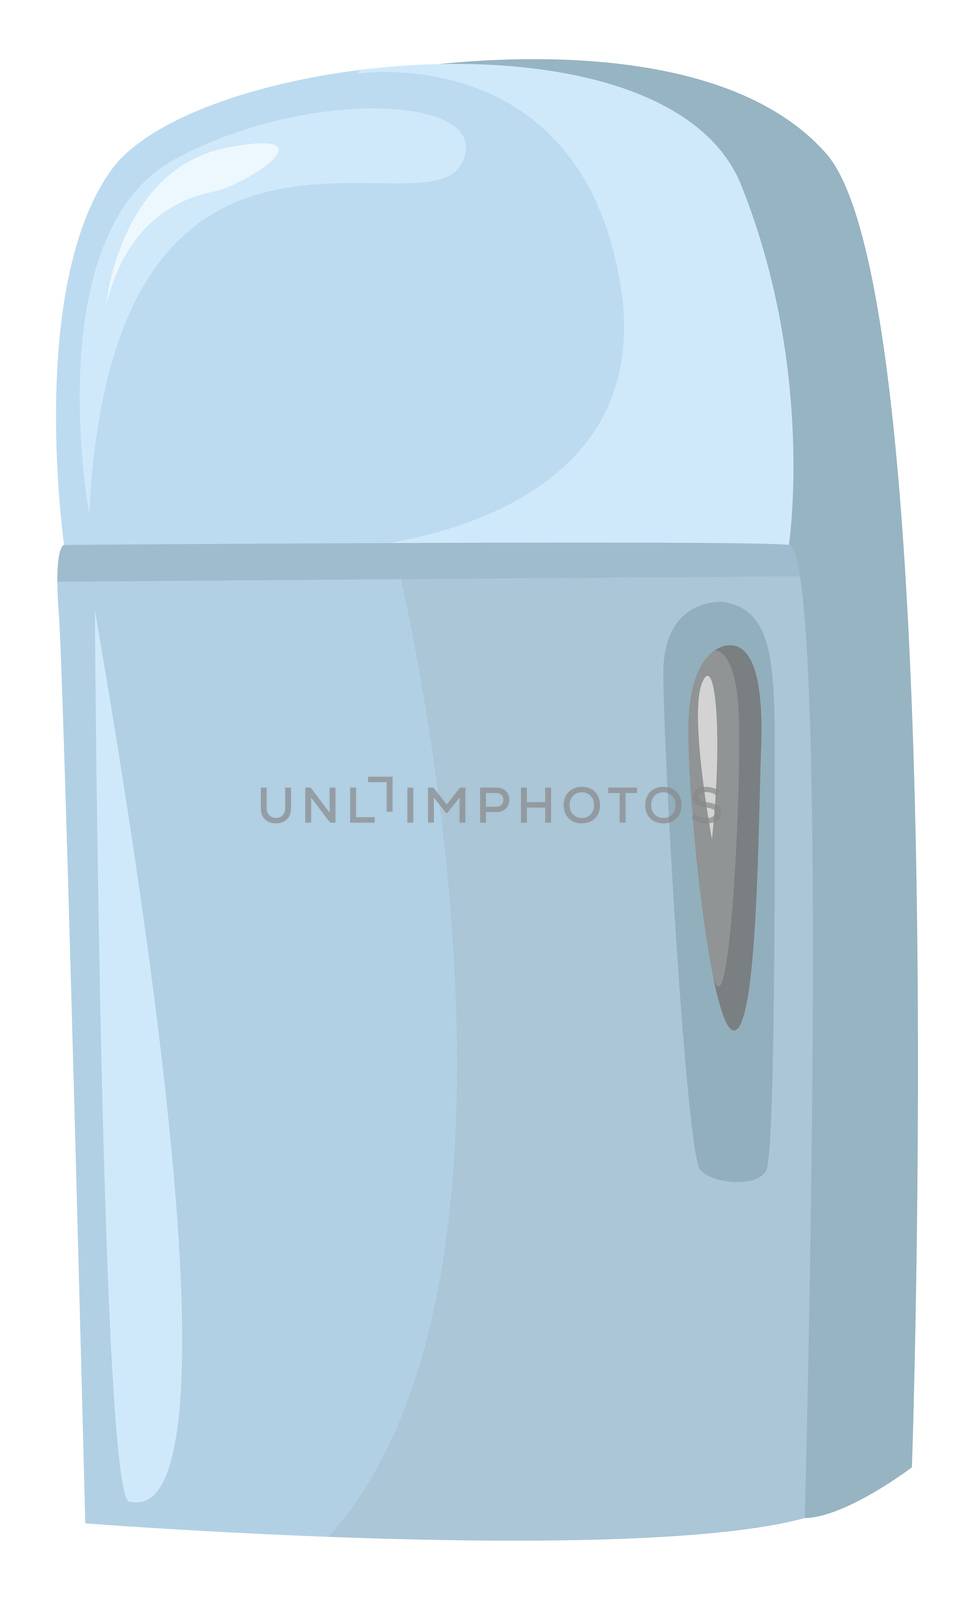 Blue fridge , illustration, vector on white background